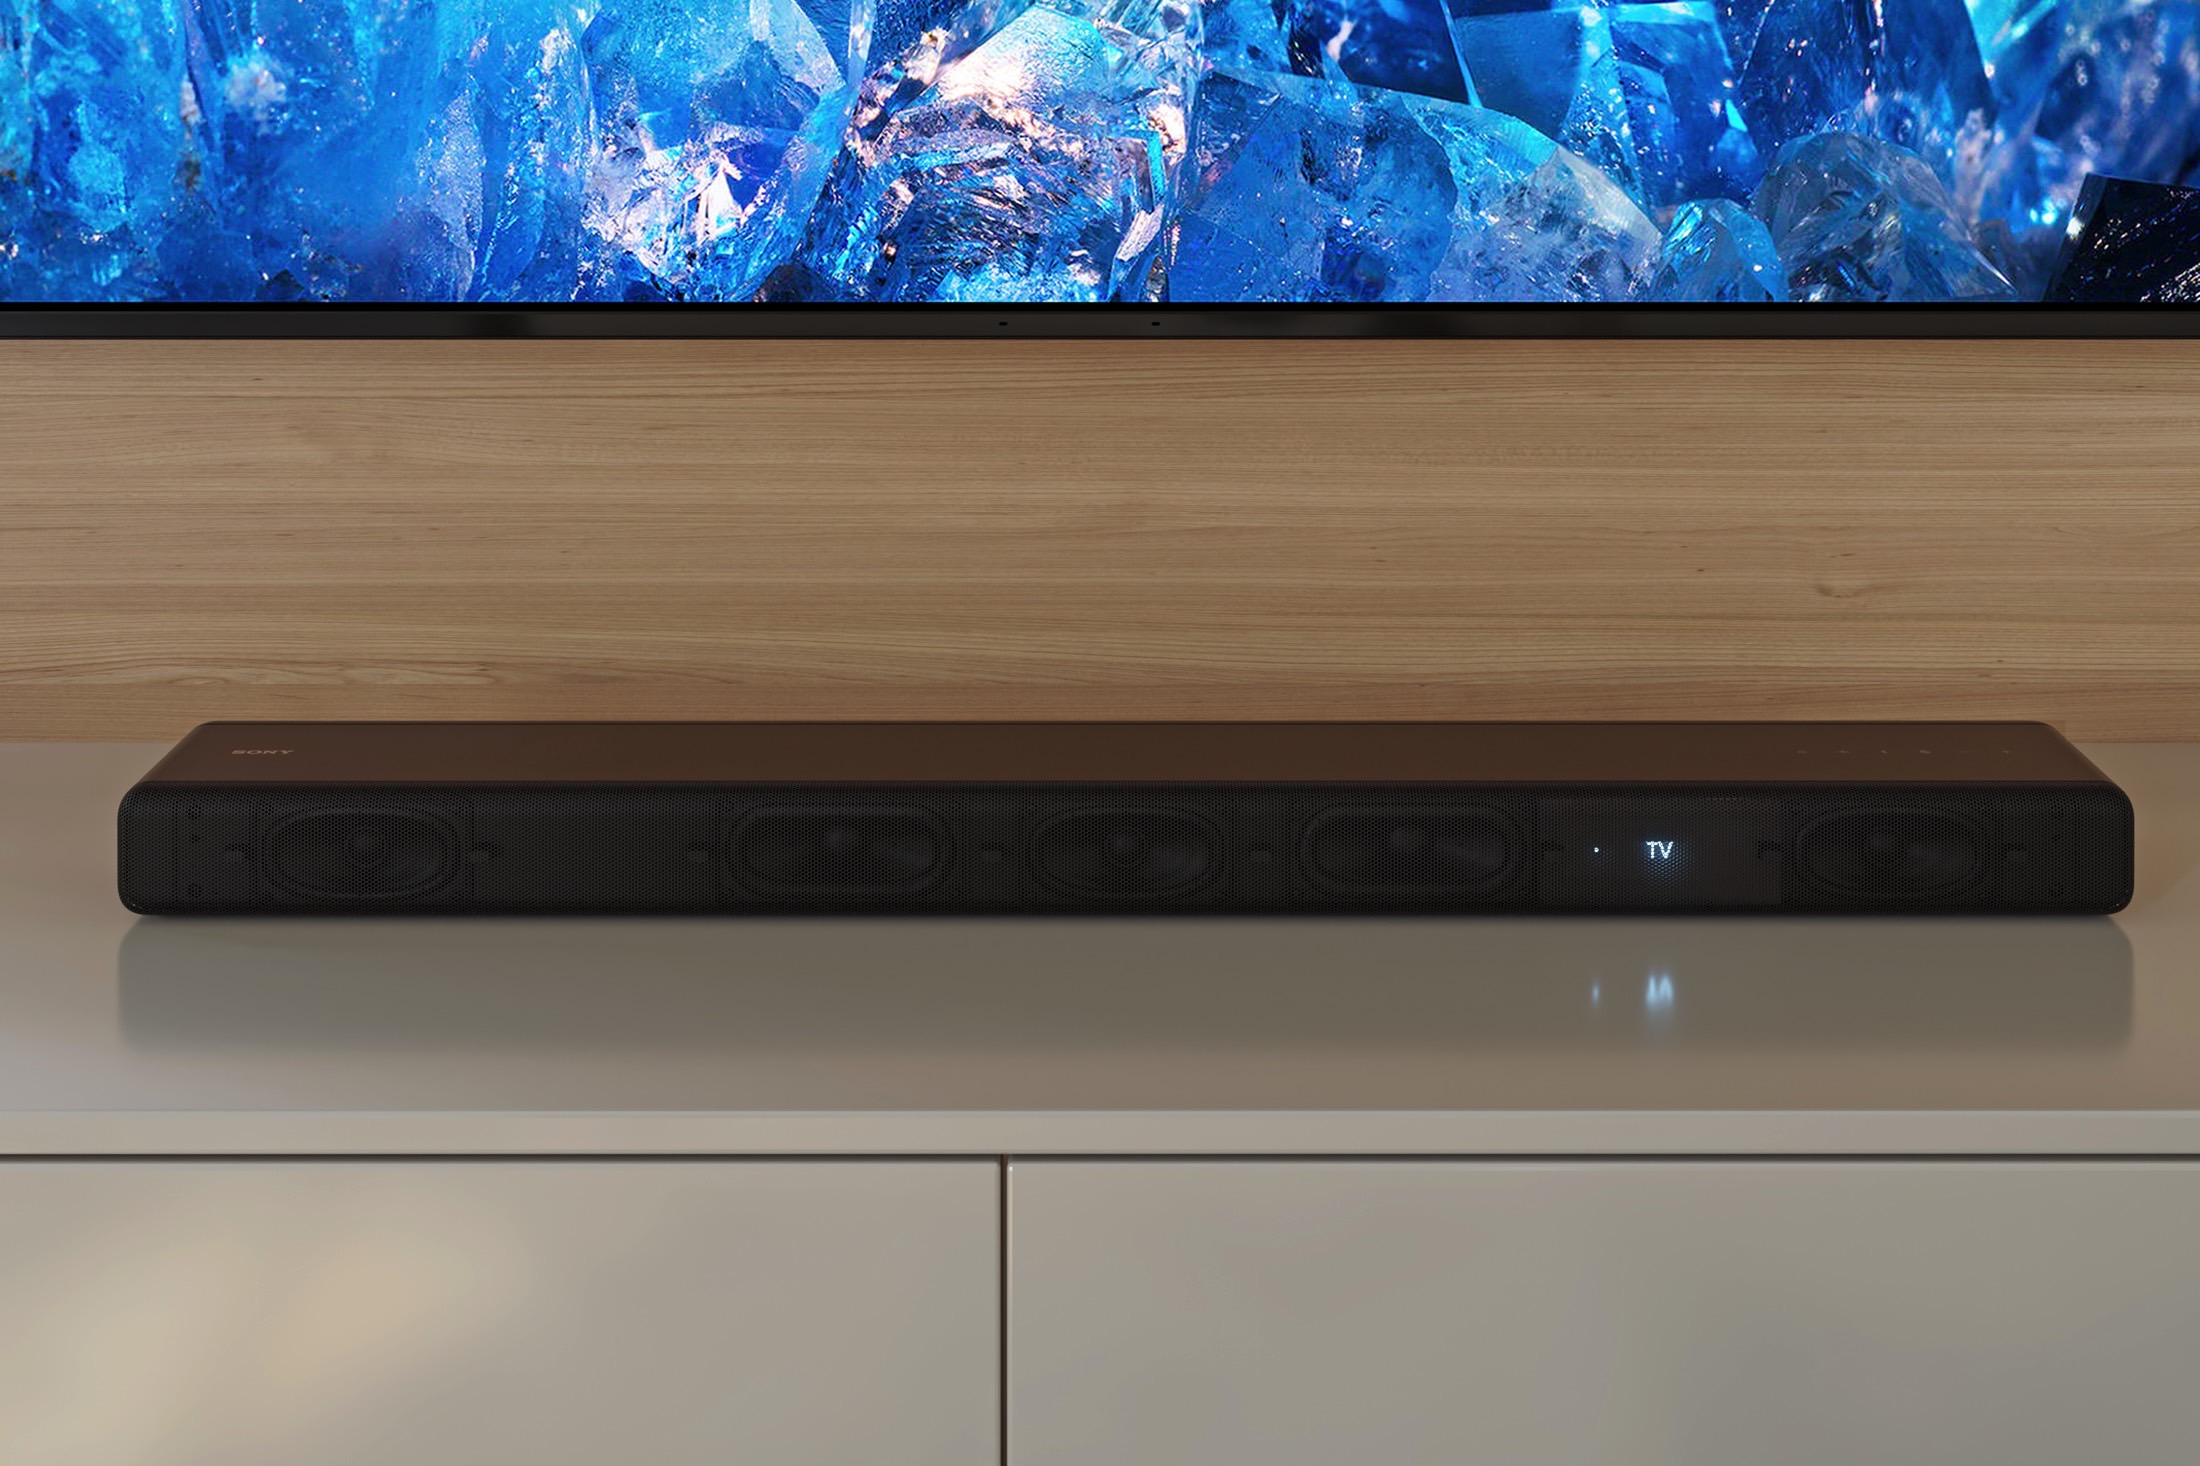 Sony HT-A3000, nueva barra de sonido con 360 Spatial Audio y Dolby Atmos  presentada en la IFA 2022